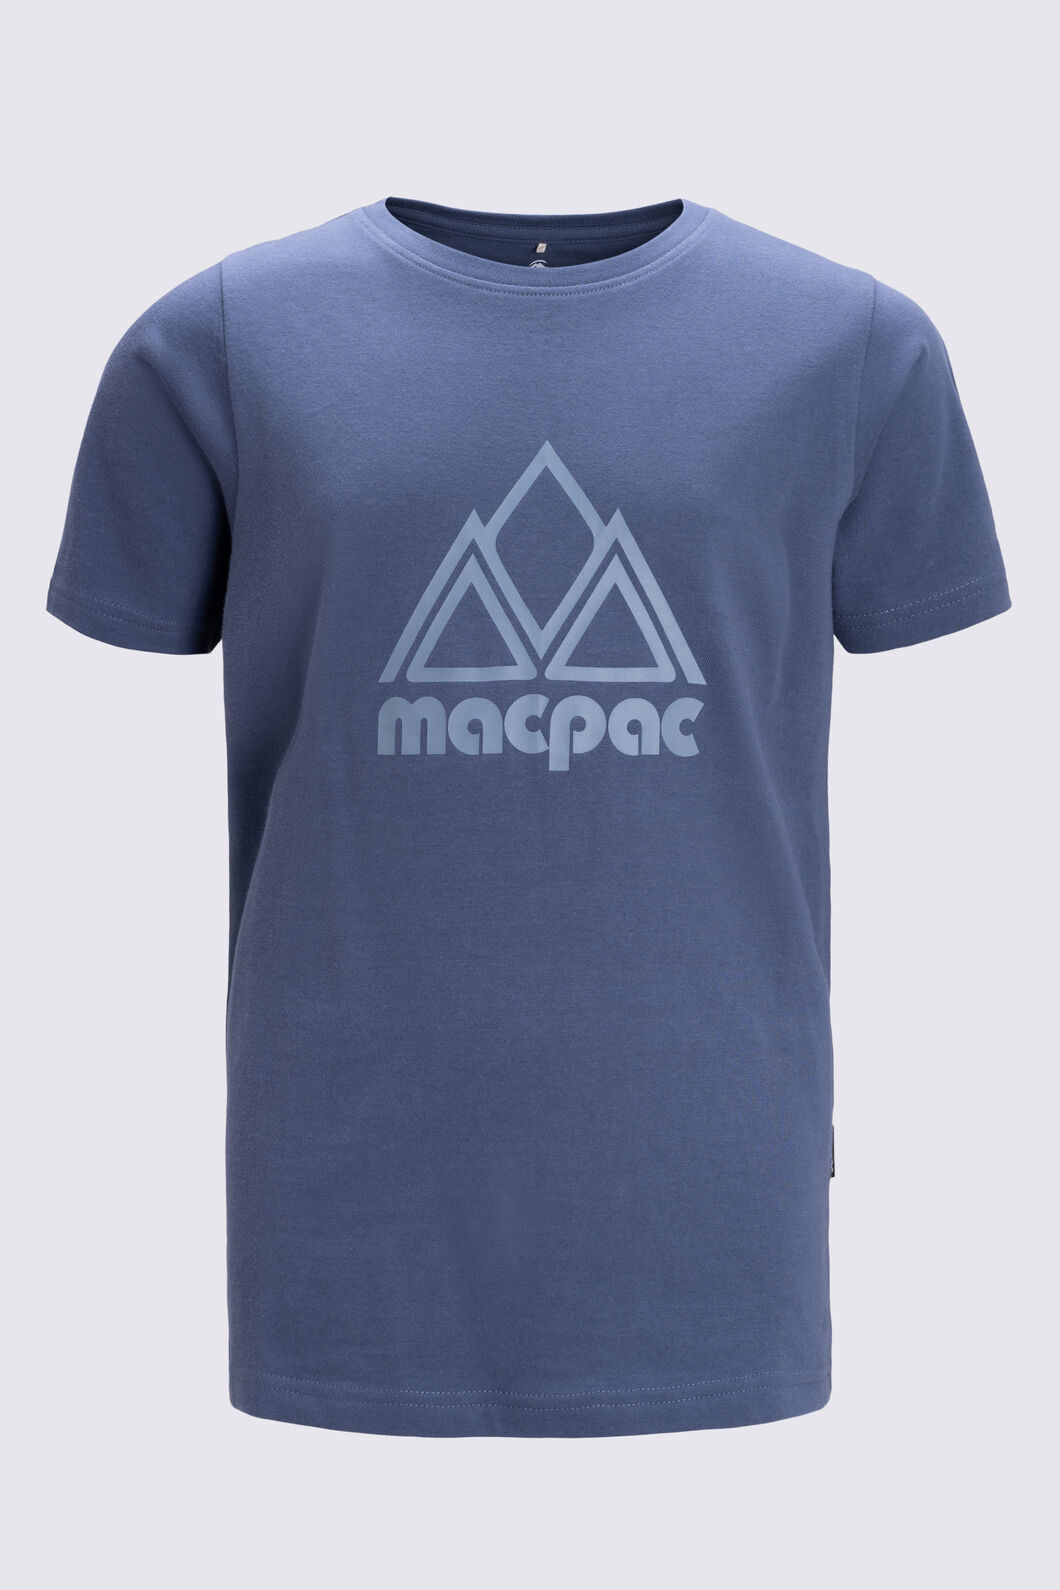 Macpac Kids' Vintage Graphic T-Shirt, Vintage Indigo, hi-res